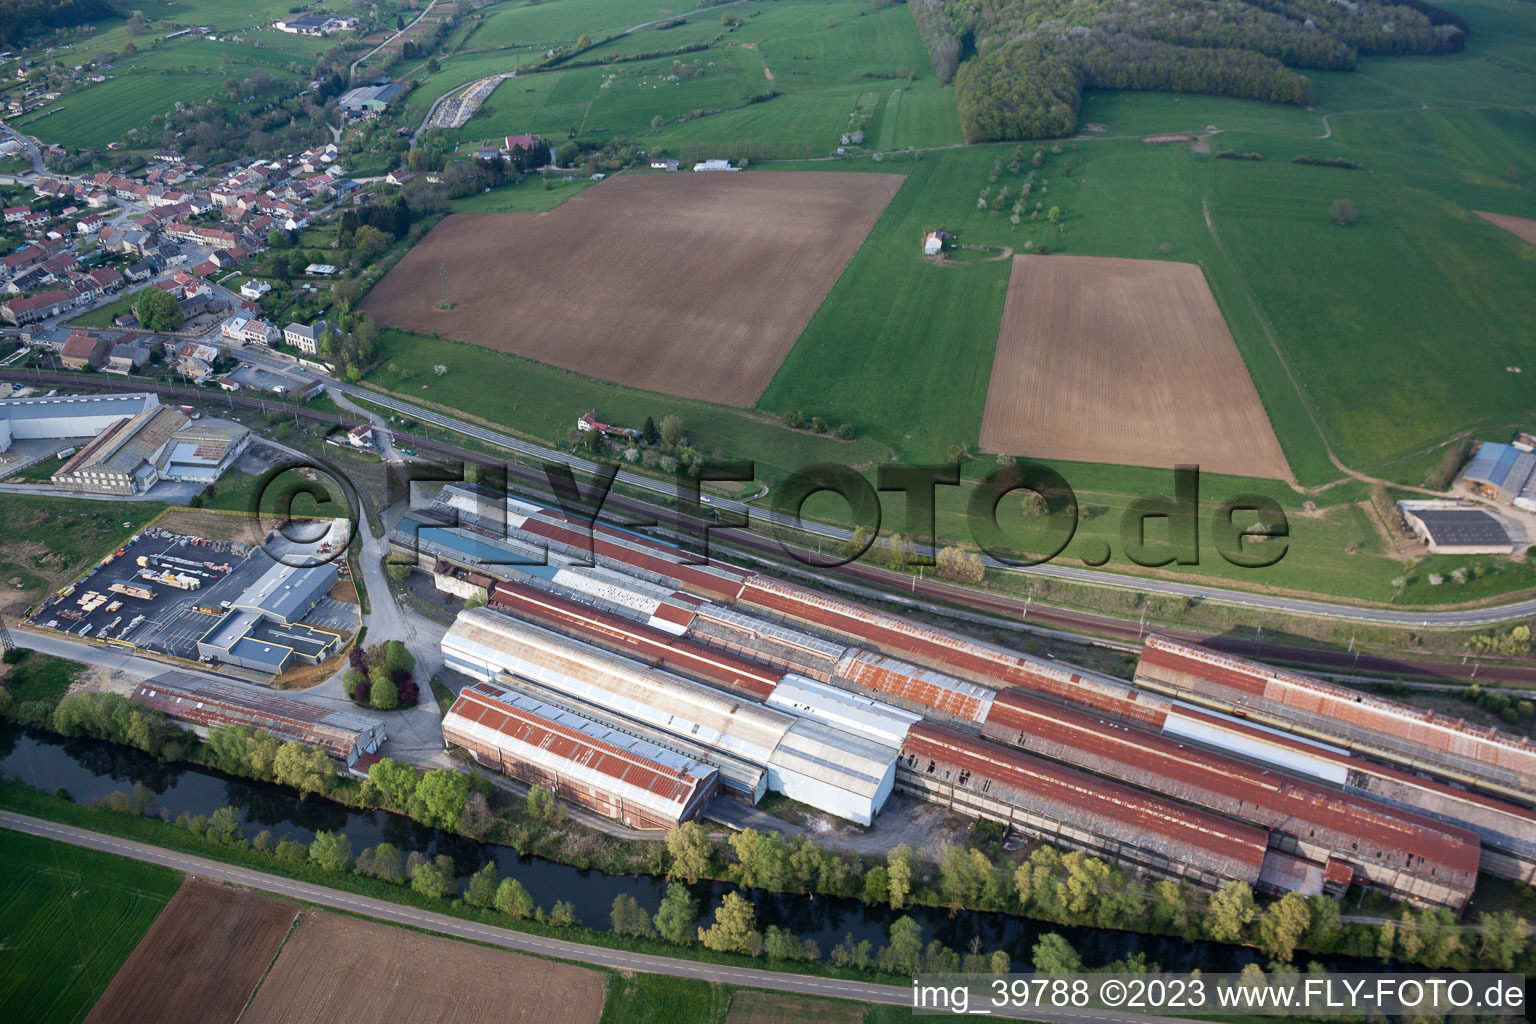 Vue aérienne de Dépôt ferroviaire et atelier de réparation, entretien et réparation de trains à Blagny dans le département Ardennes, France